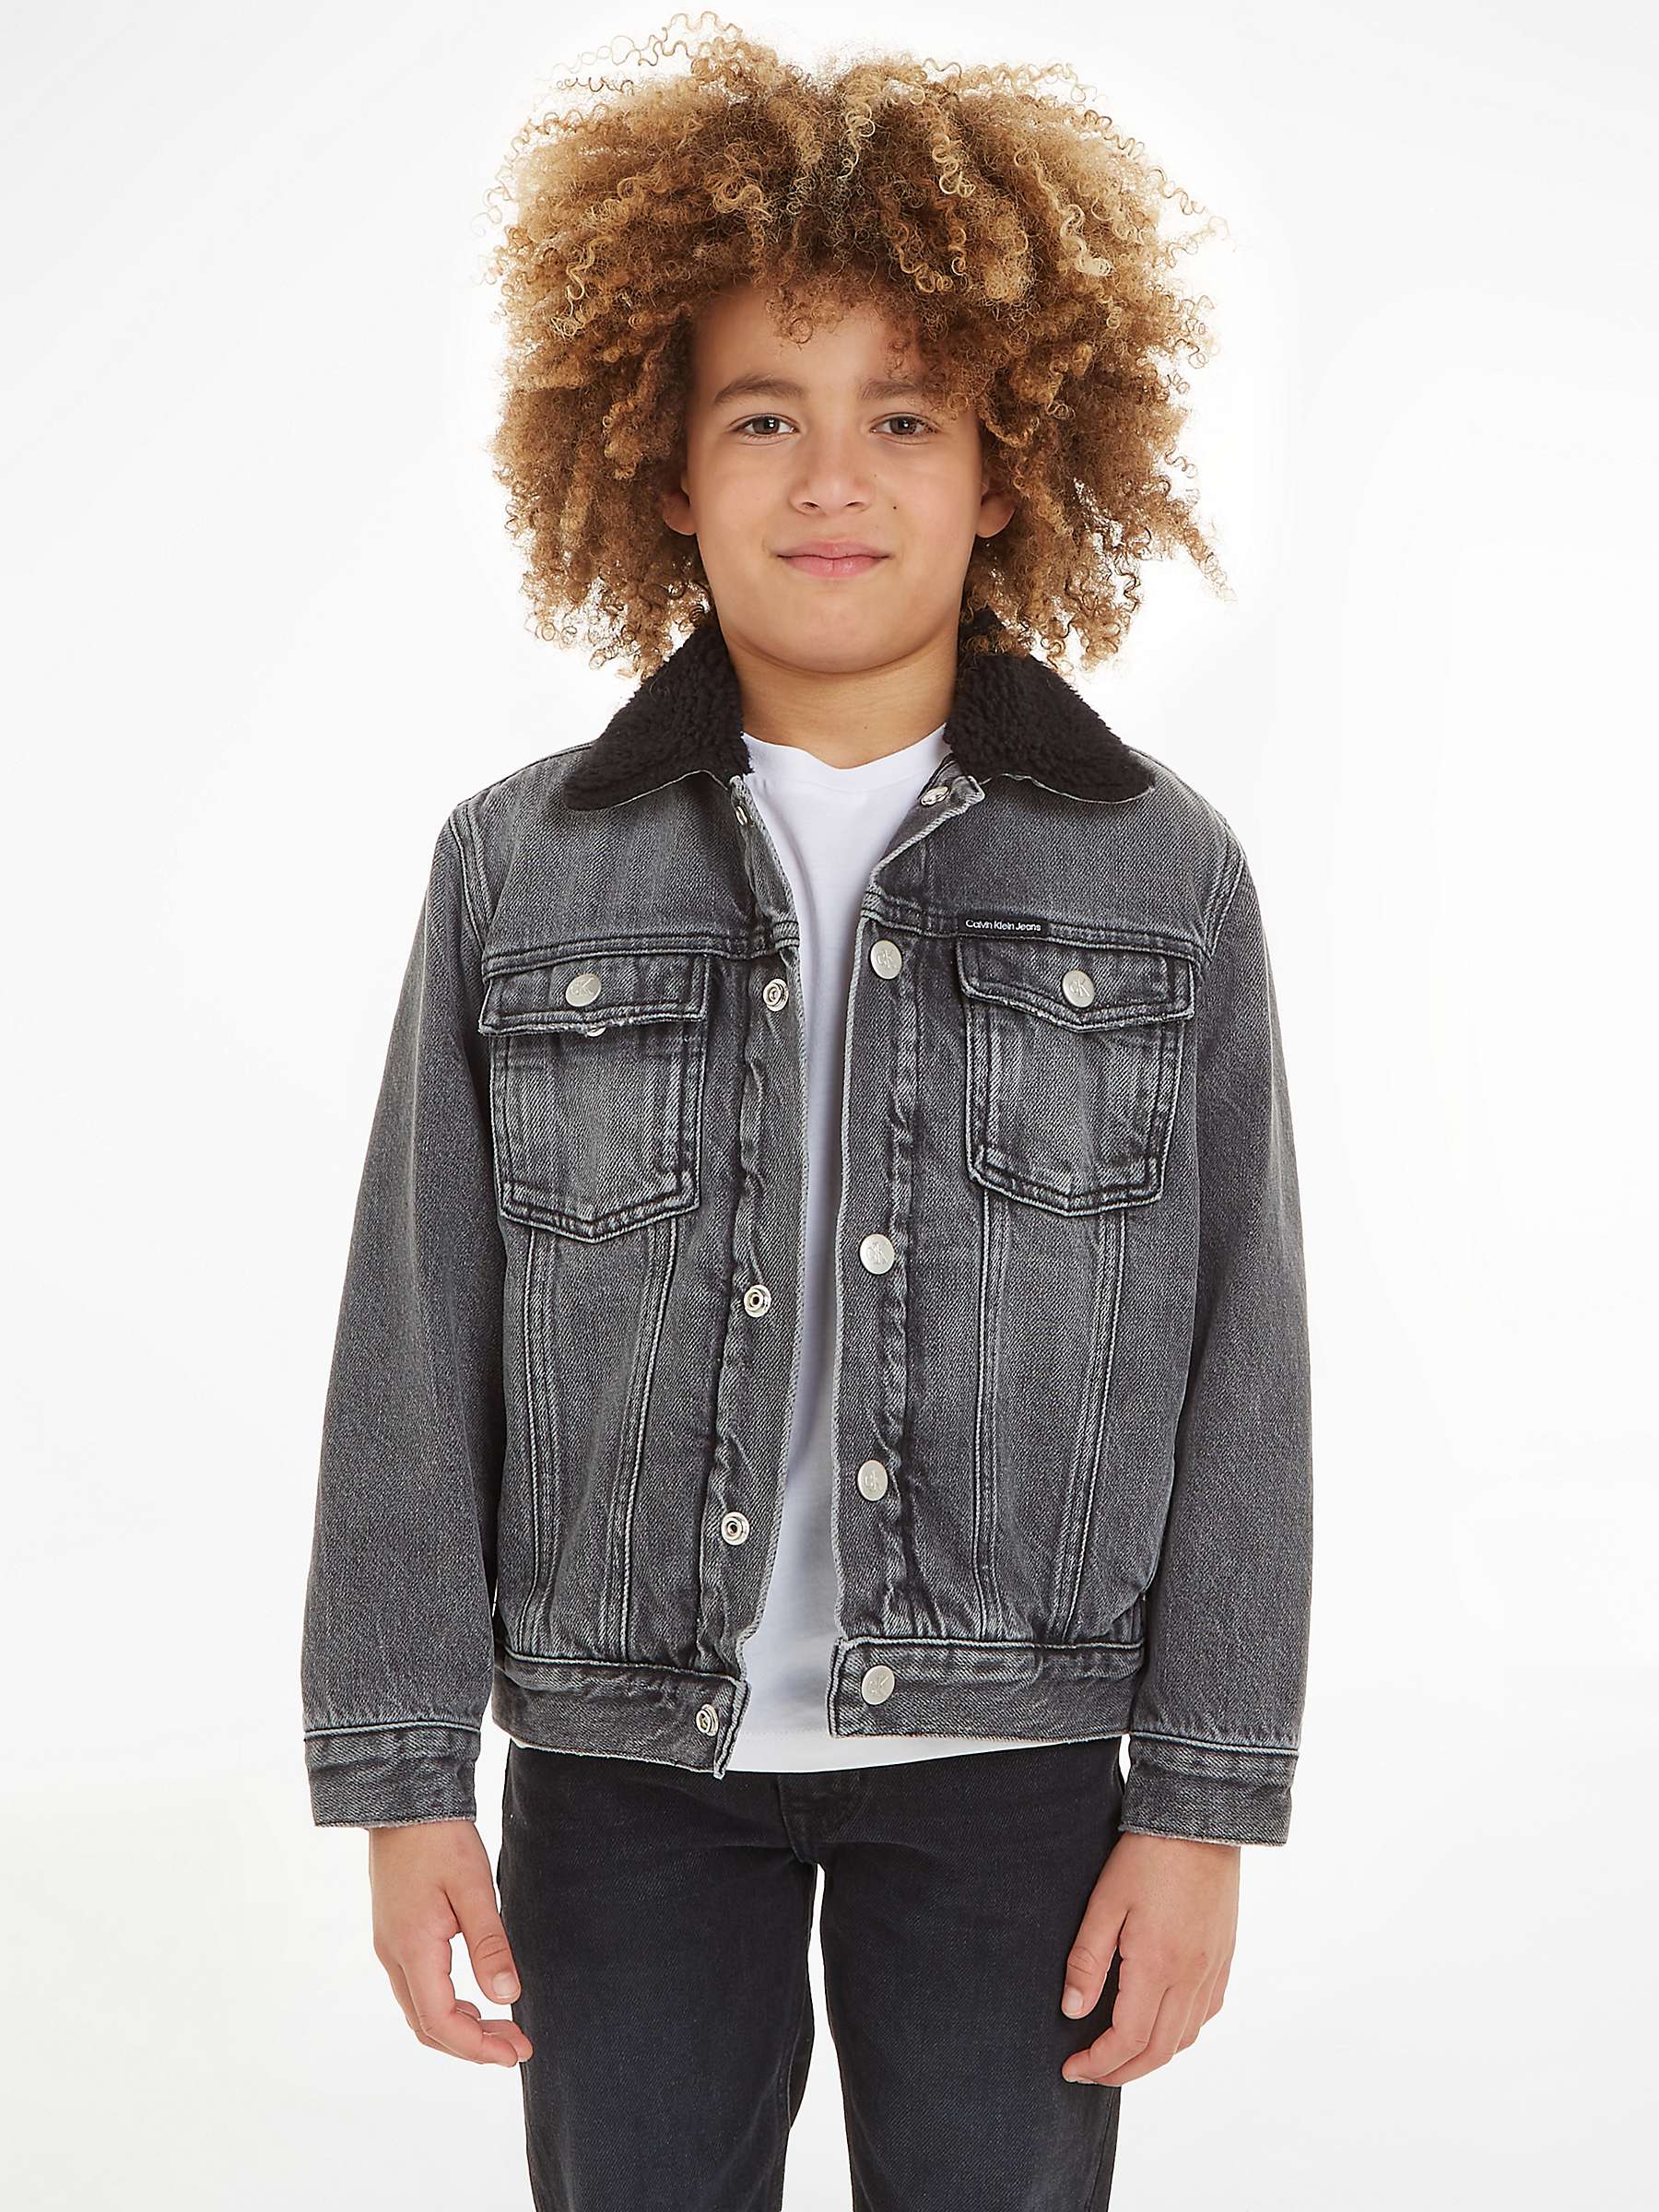 Calvin Klein Kids' Cotton Sherpa Denim Jacket, Visual Grey at John ...